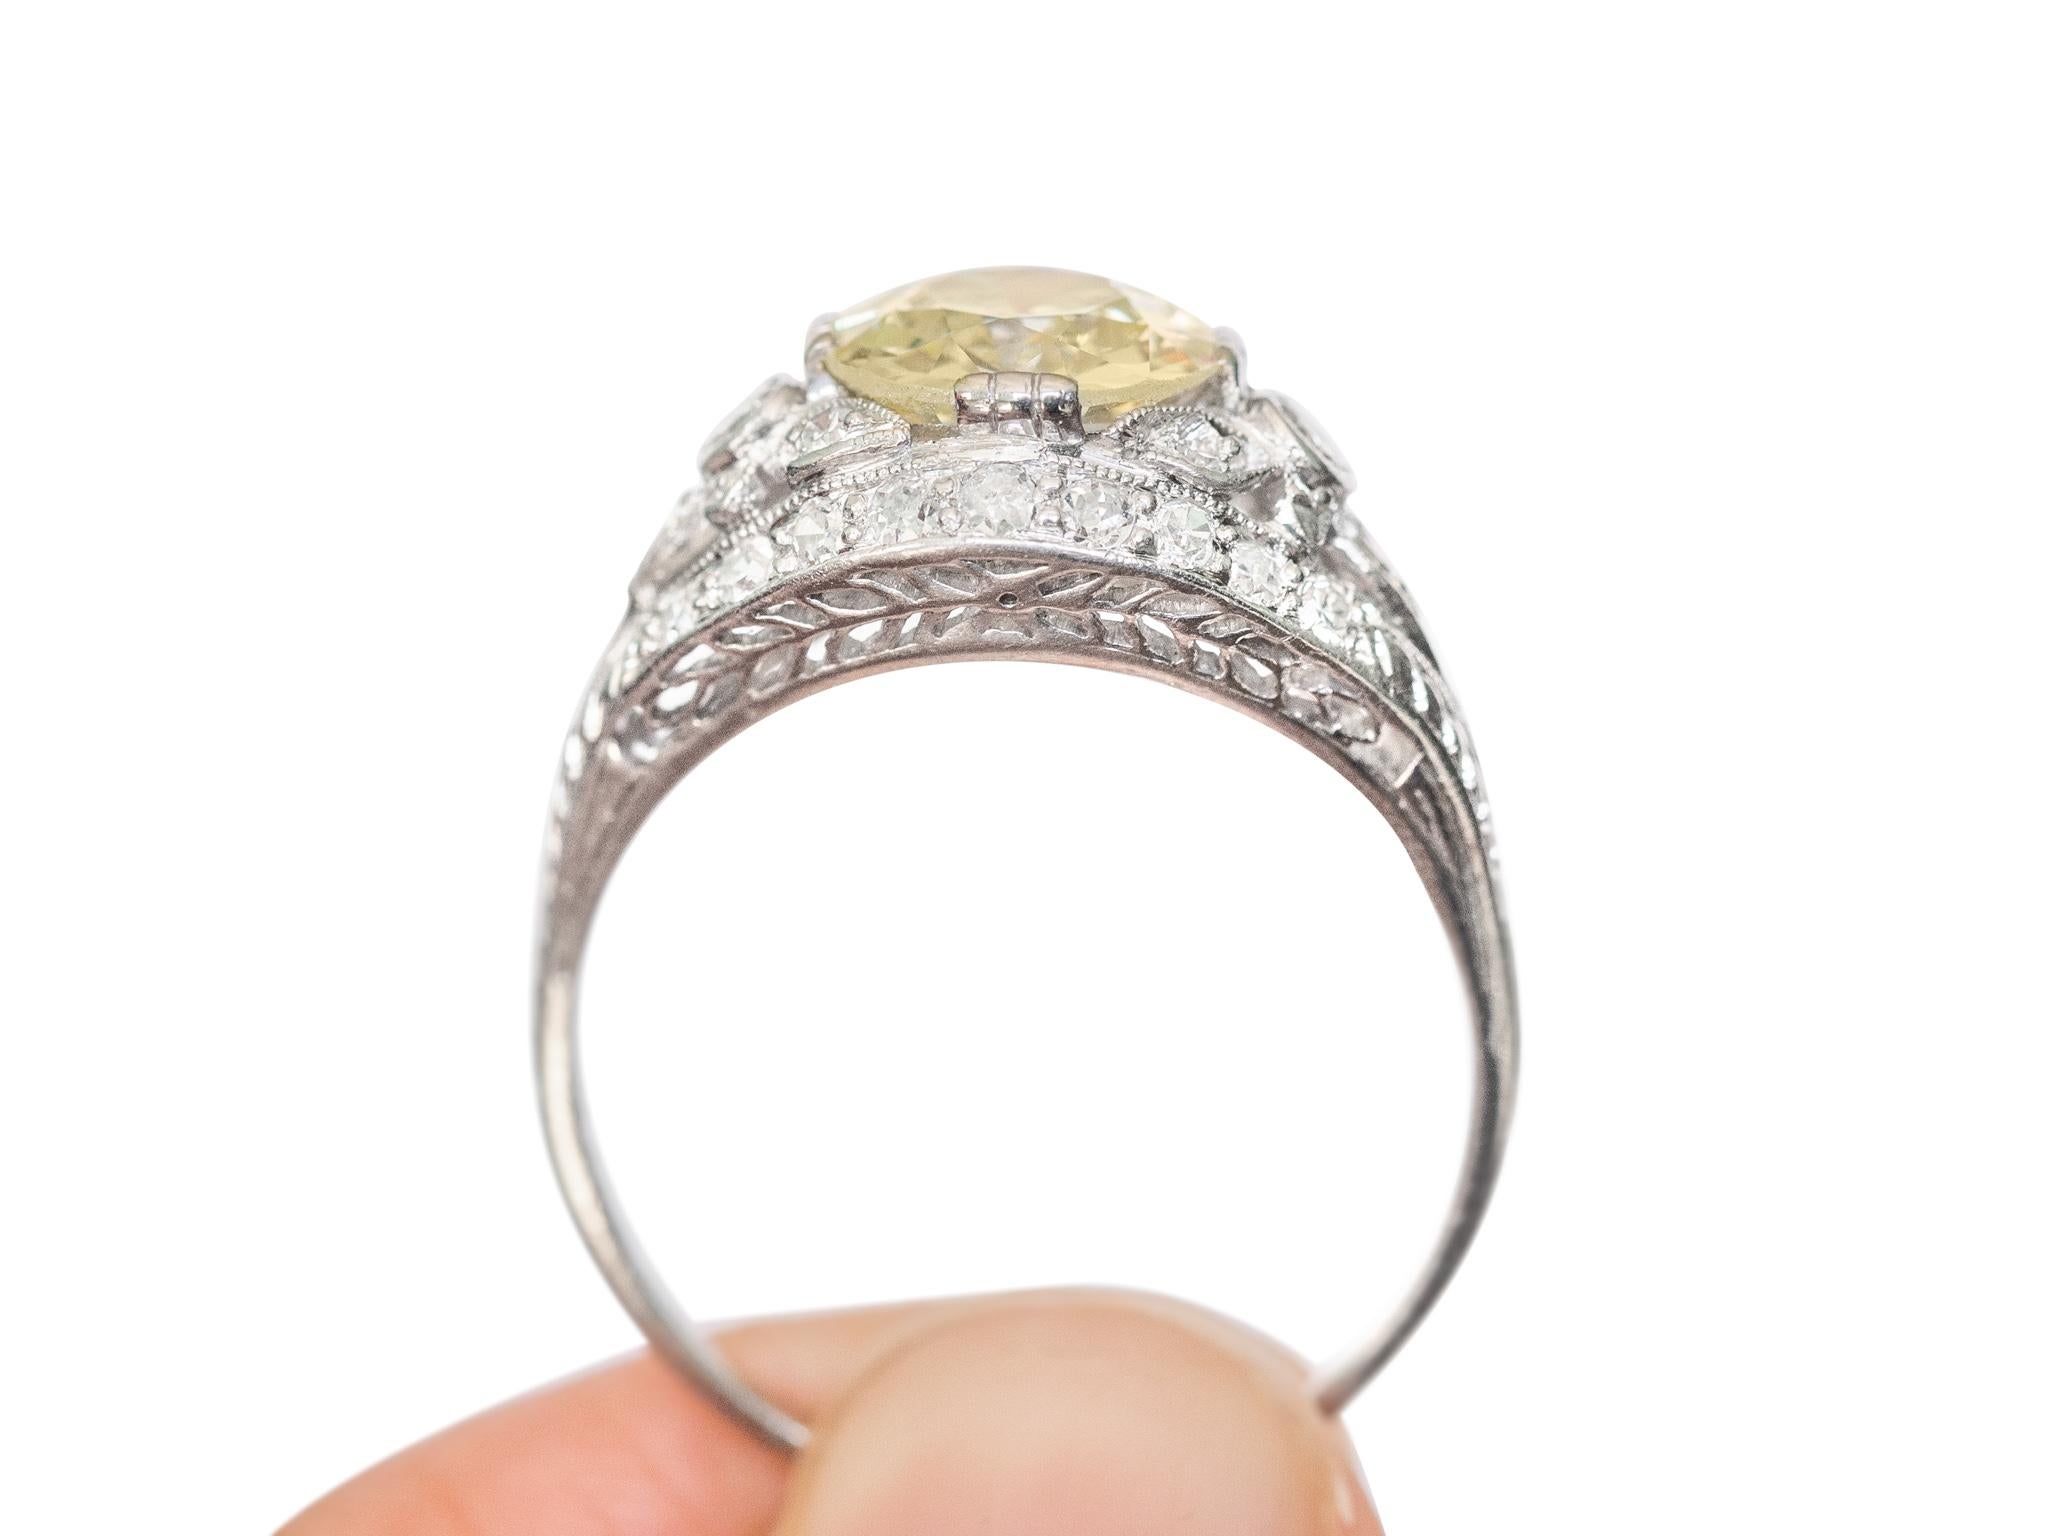 2.18 Carat Diamond Platinum Engagement Ring In Good Condition For Sale In Atlanta, GA